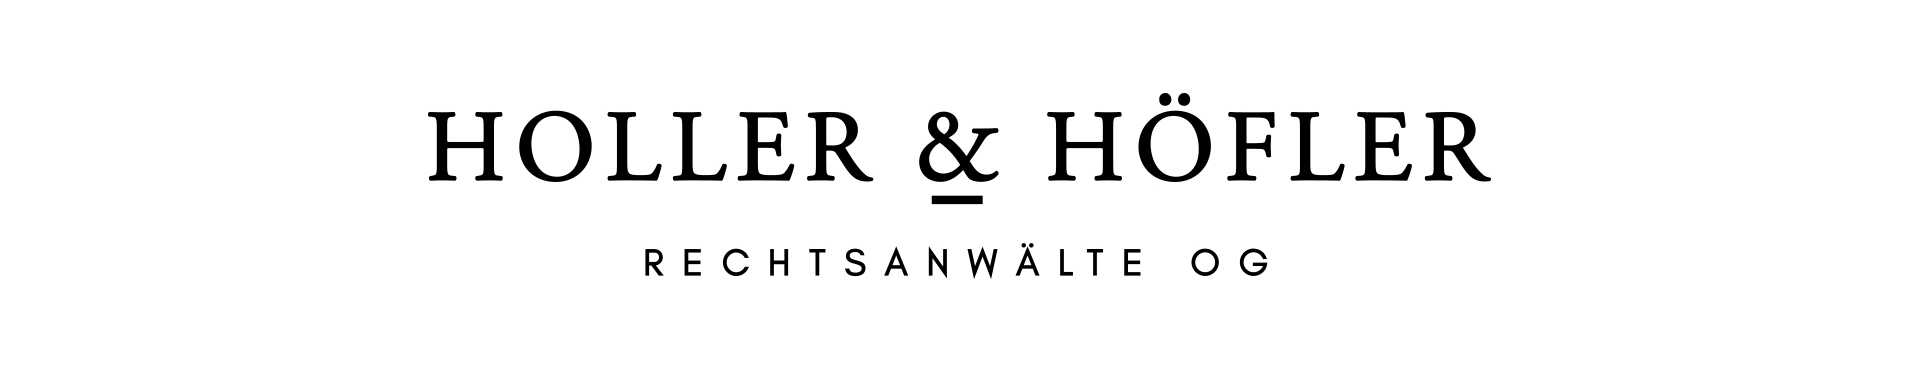 holler-hoefler-logo